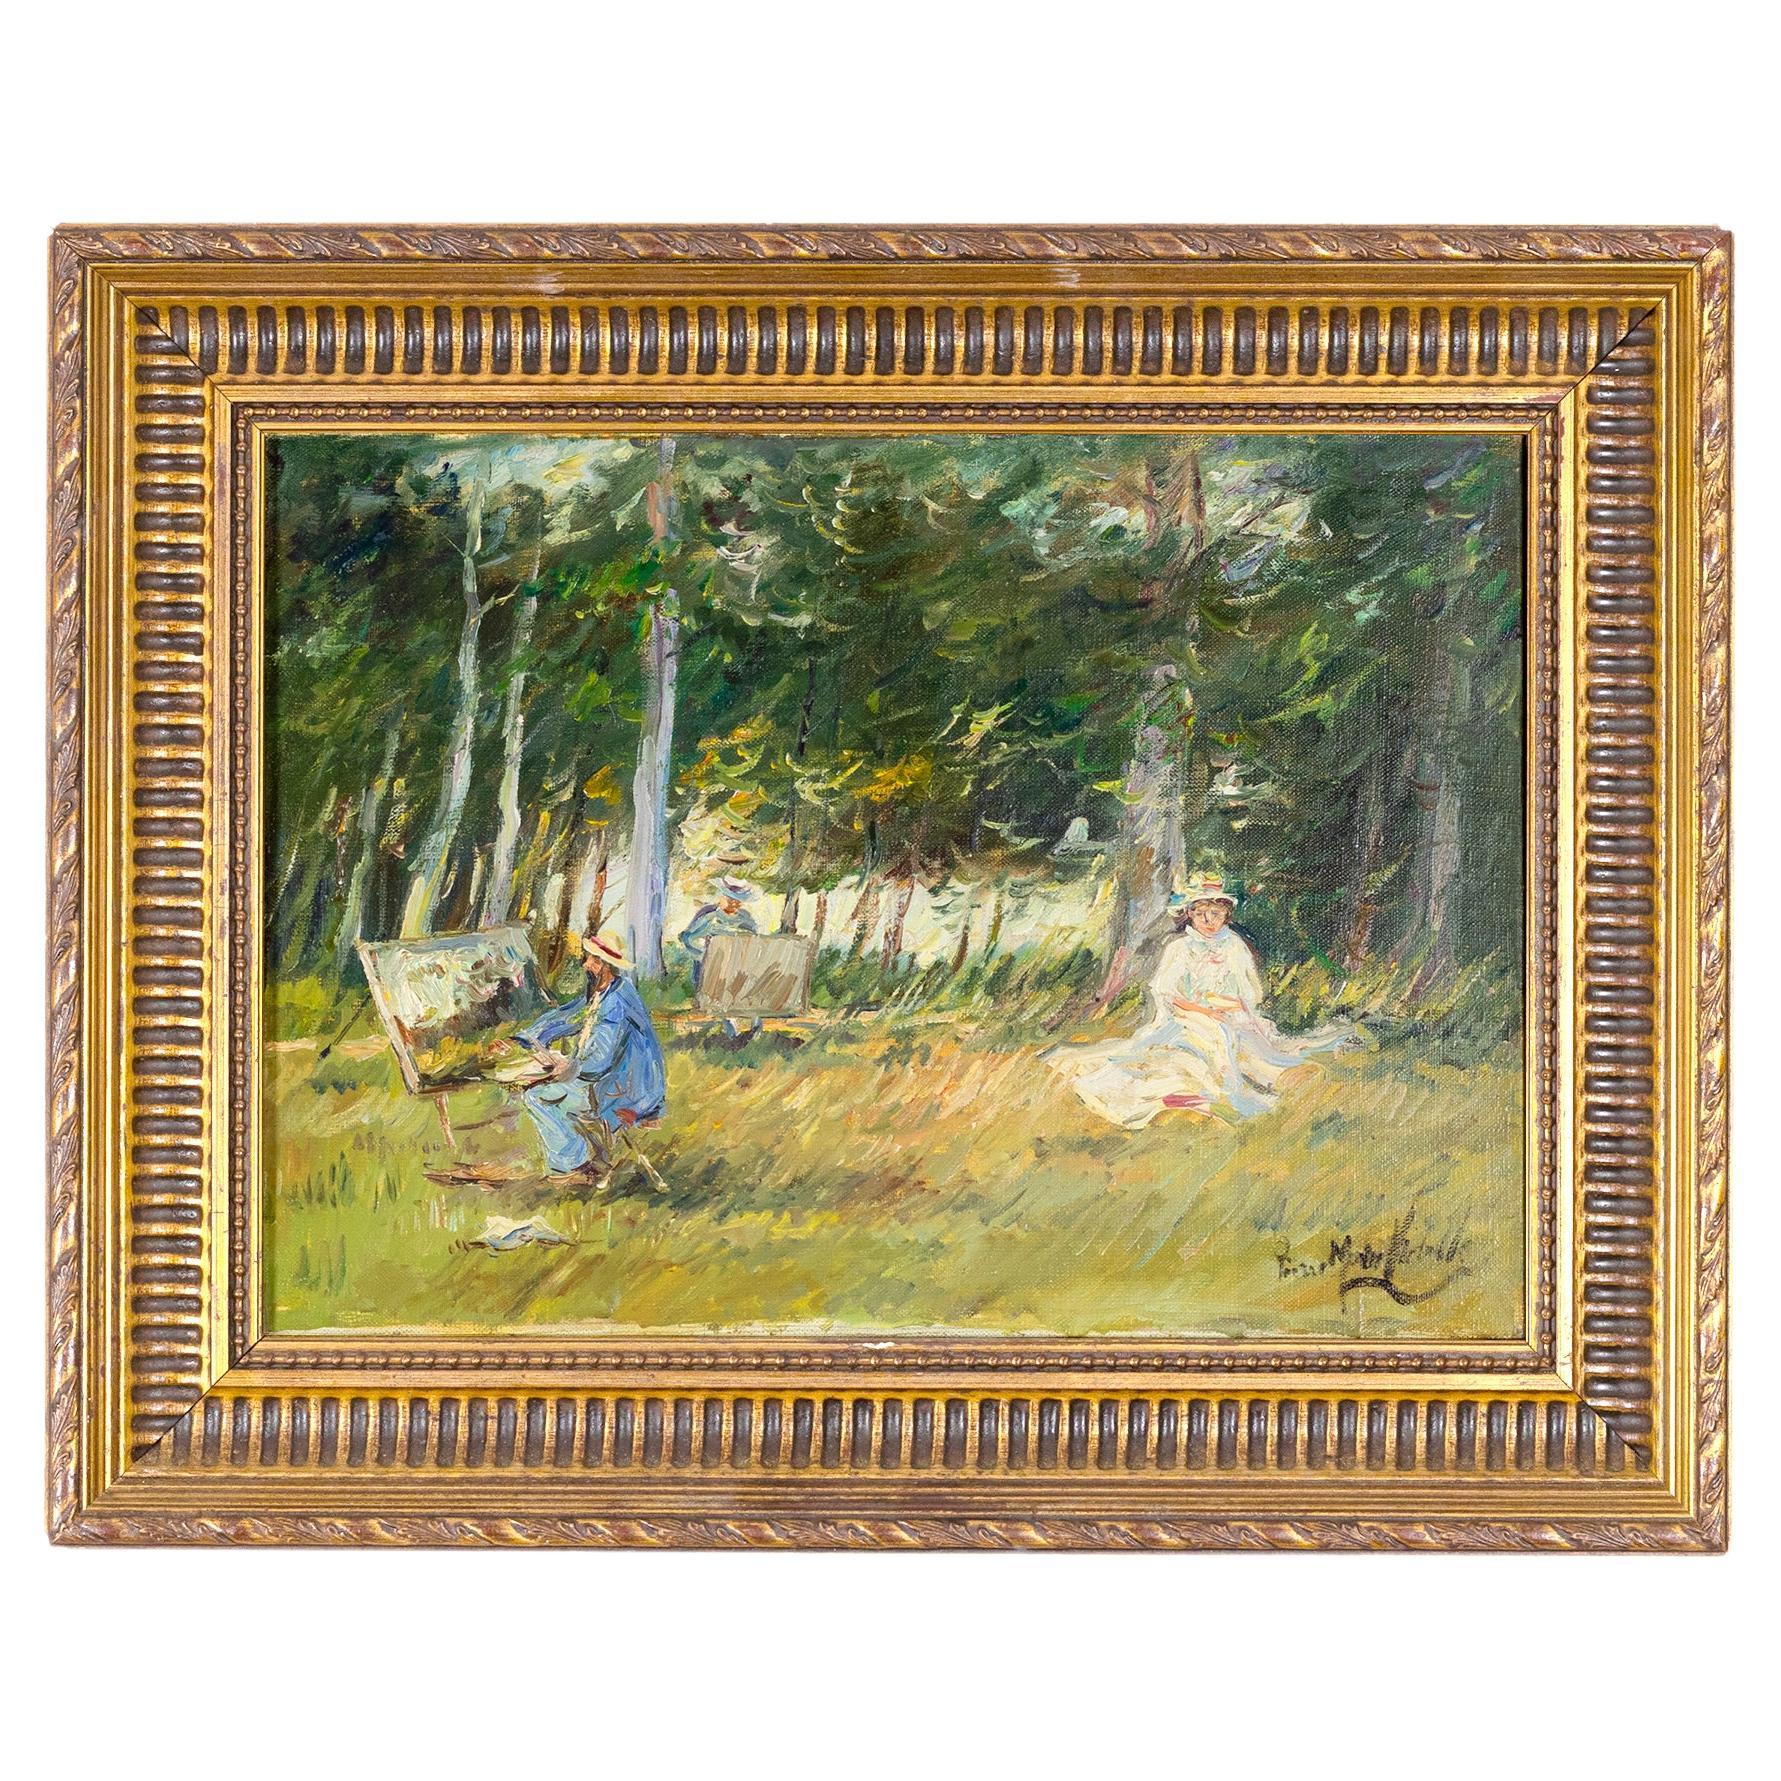 Szene im Barbizon-Stil von Pierre Morinville, Gemälde des 19. Jahrhunderts